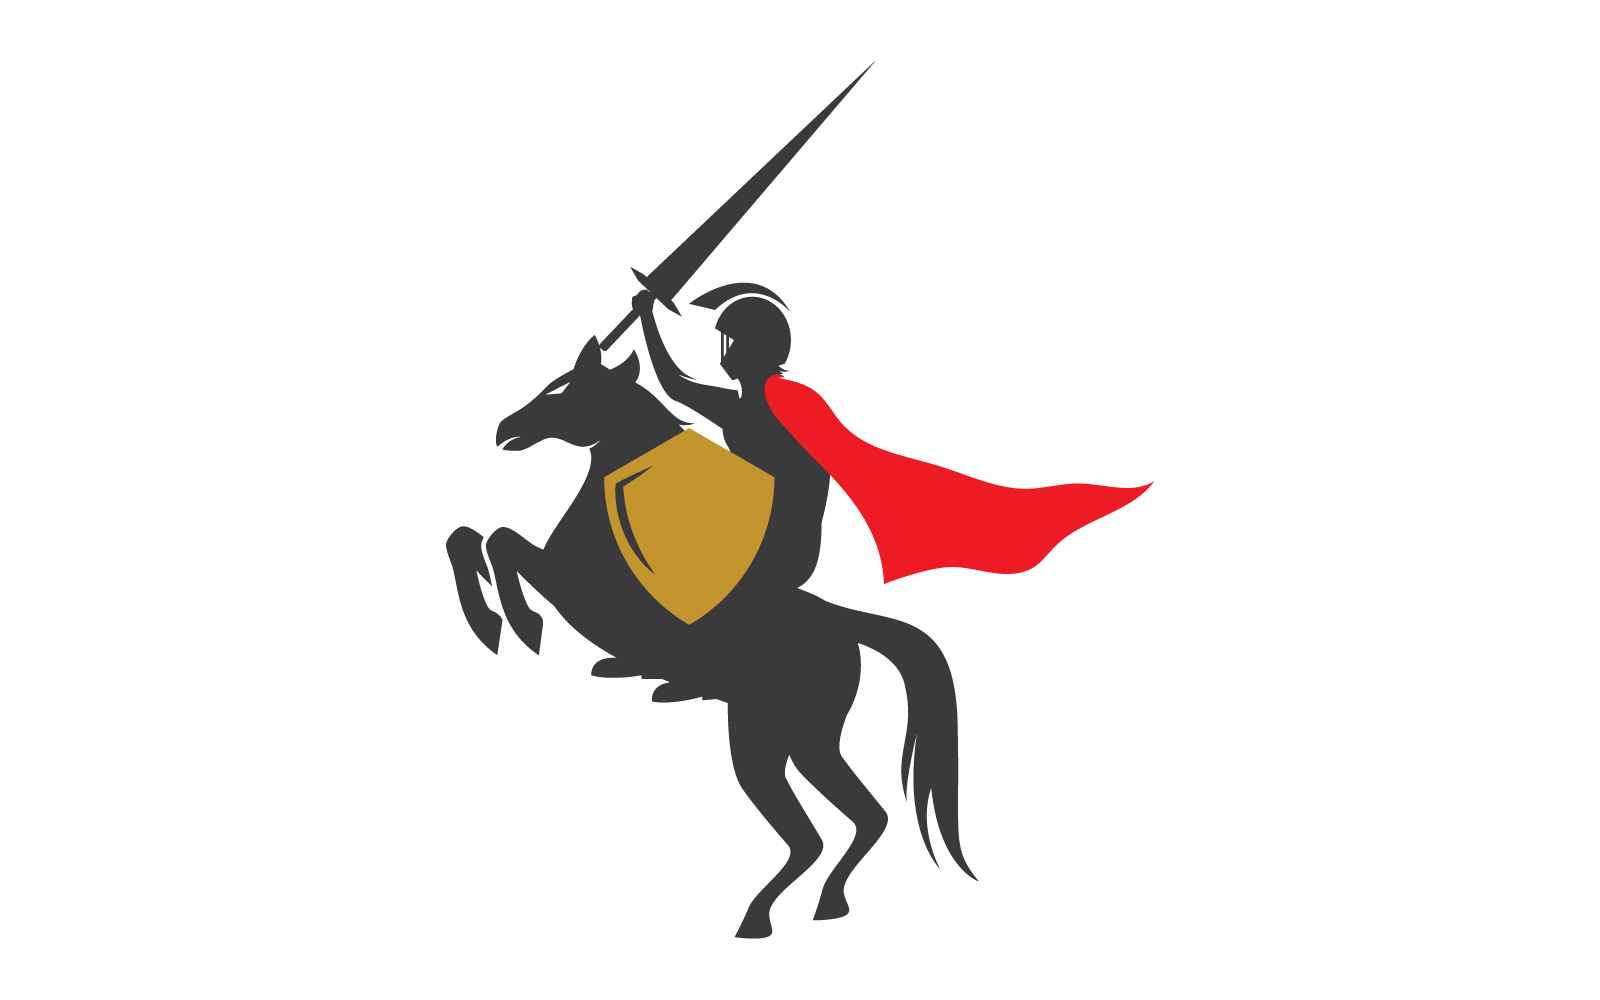 Horse knight hero logo vector design template